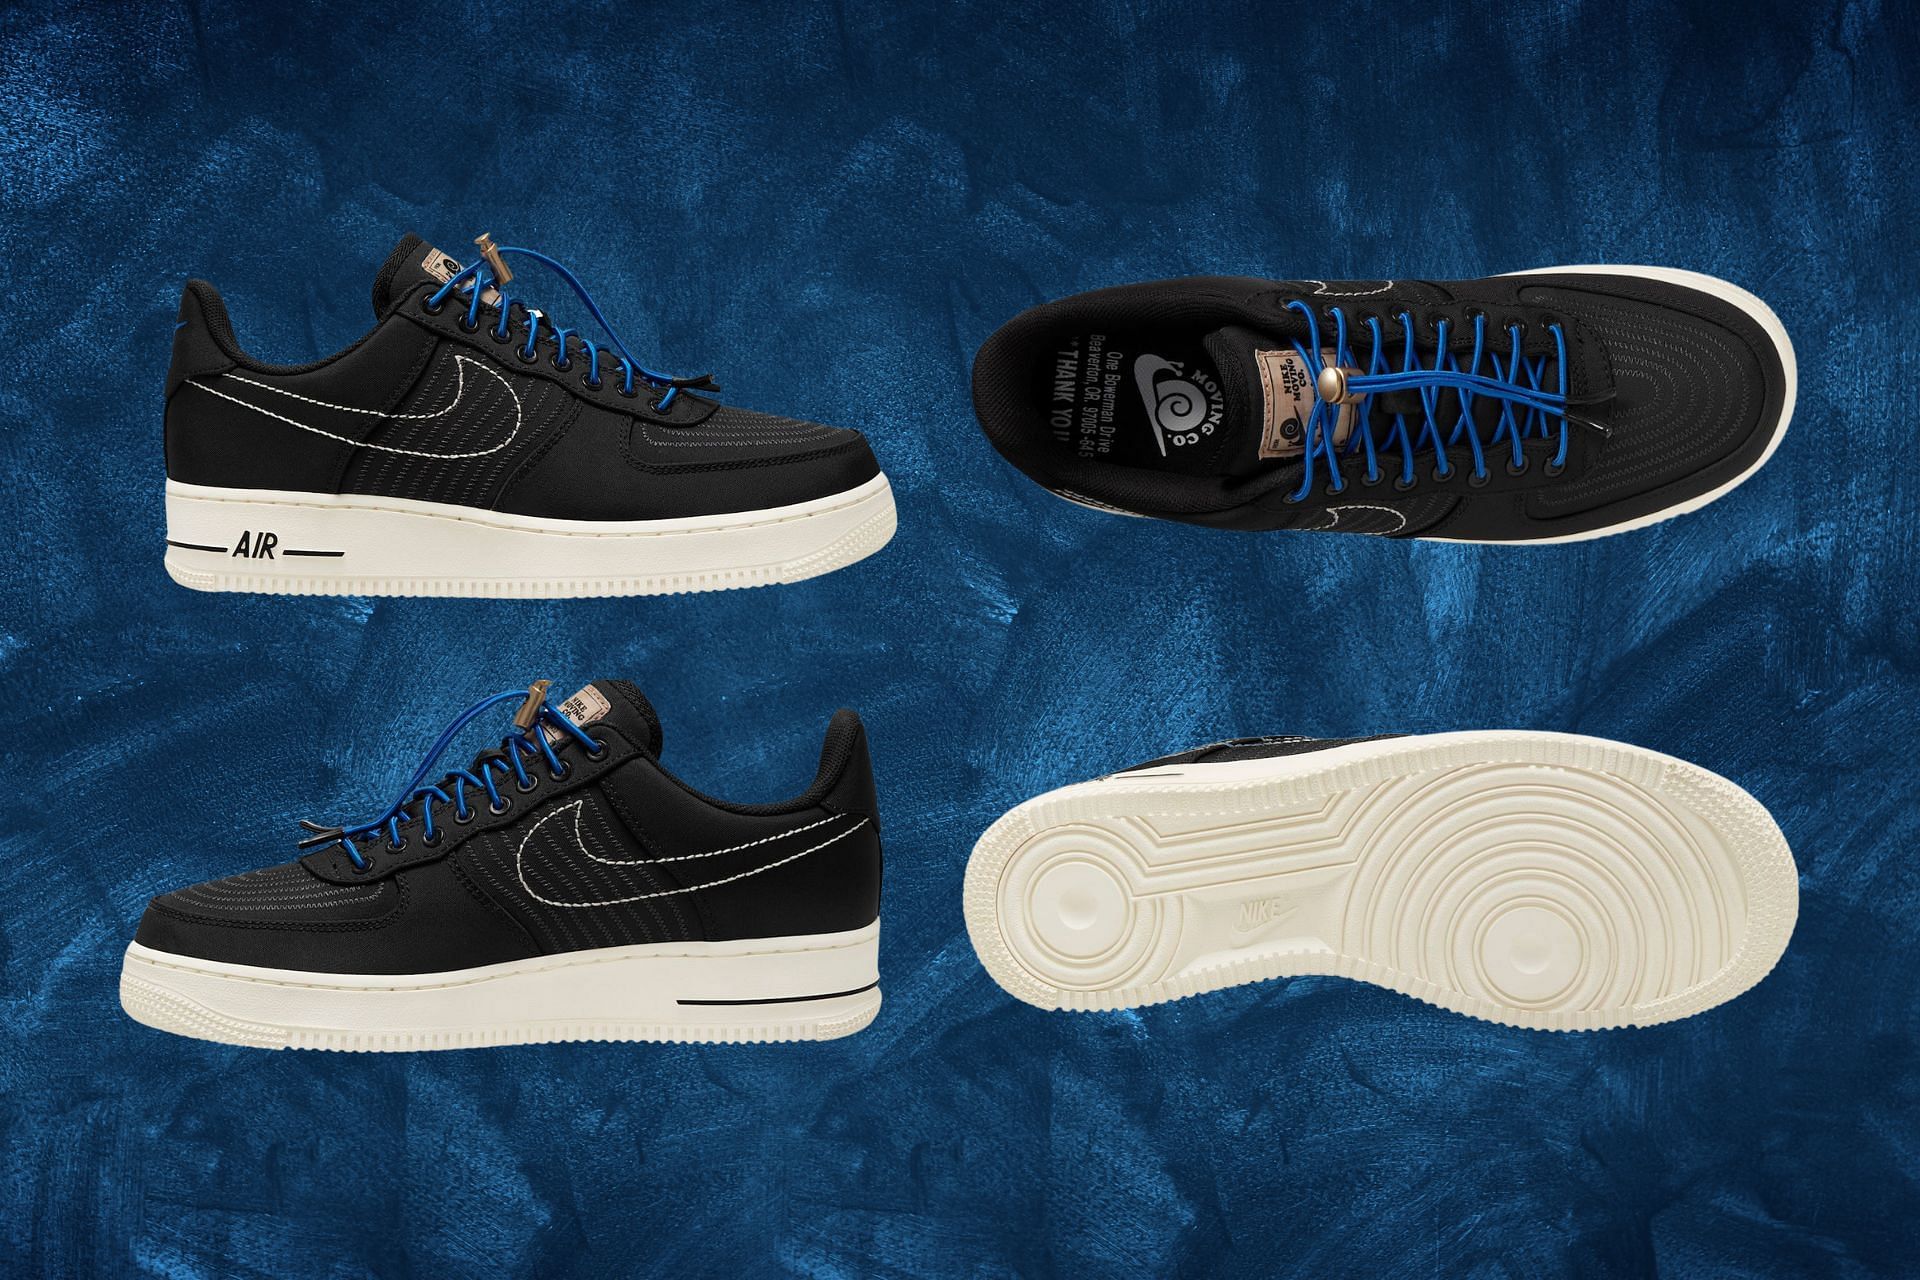 Nike Air Force 1 Low Moving Company Black sneakers (Image via Sportskeeda)